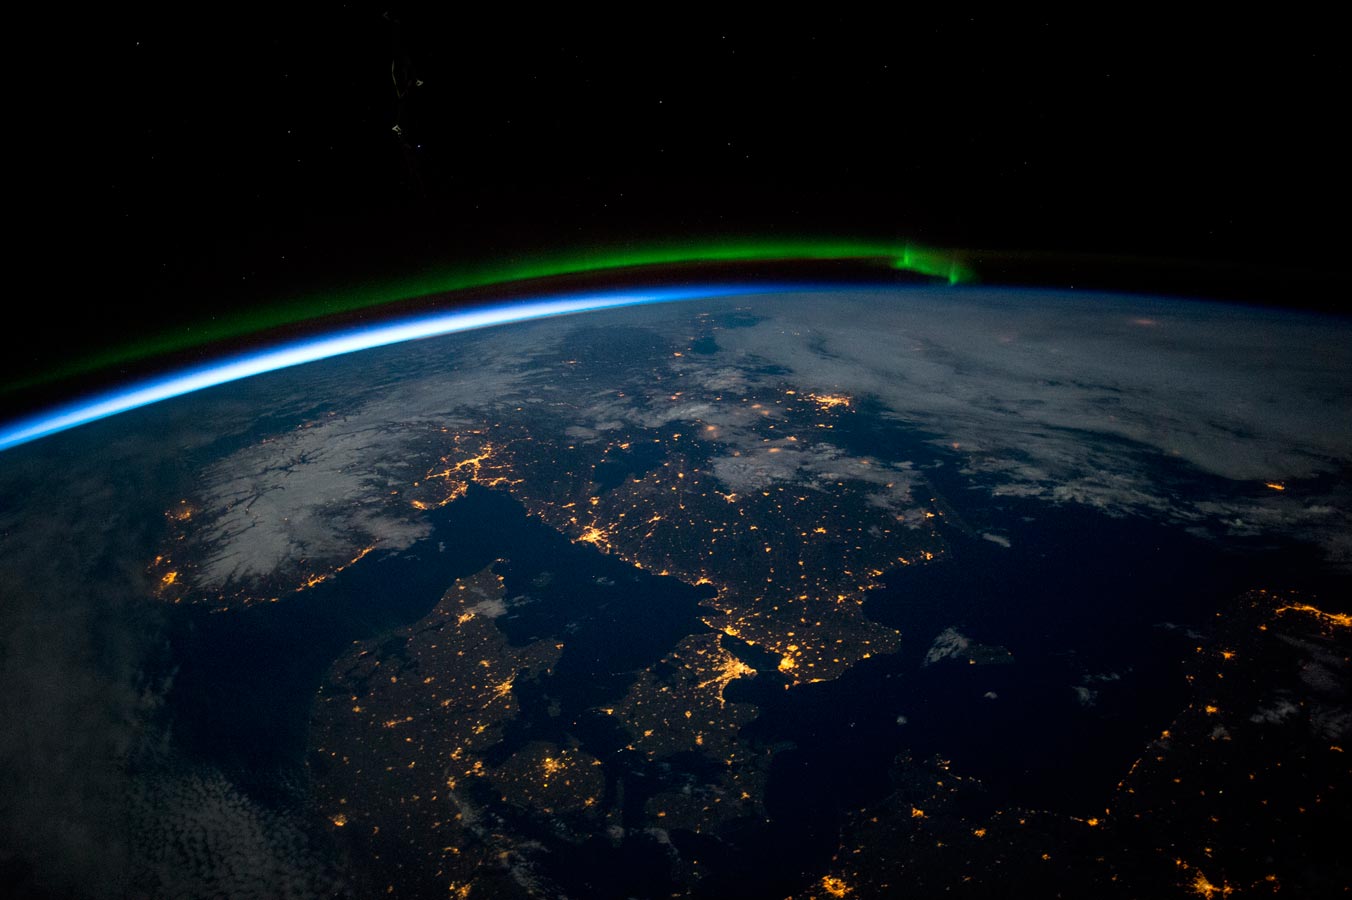 Южная Скандинавия незадолго до полуночи. На фото видно зеленое сияние на севере (верхняя середина изображения), Балтийское море (внизу справа), облака (вверху справа) и снег в Норвегии с подсветкой под полной луной и городские огни на побережье.